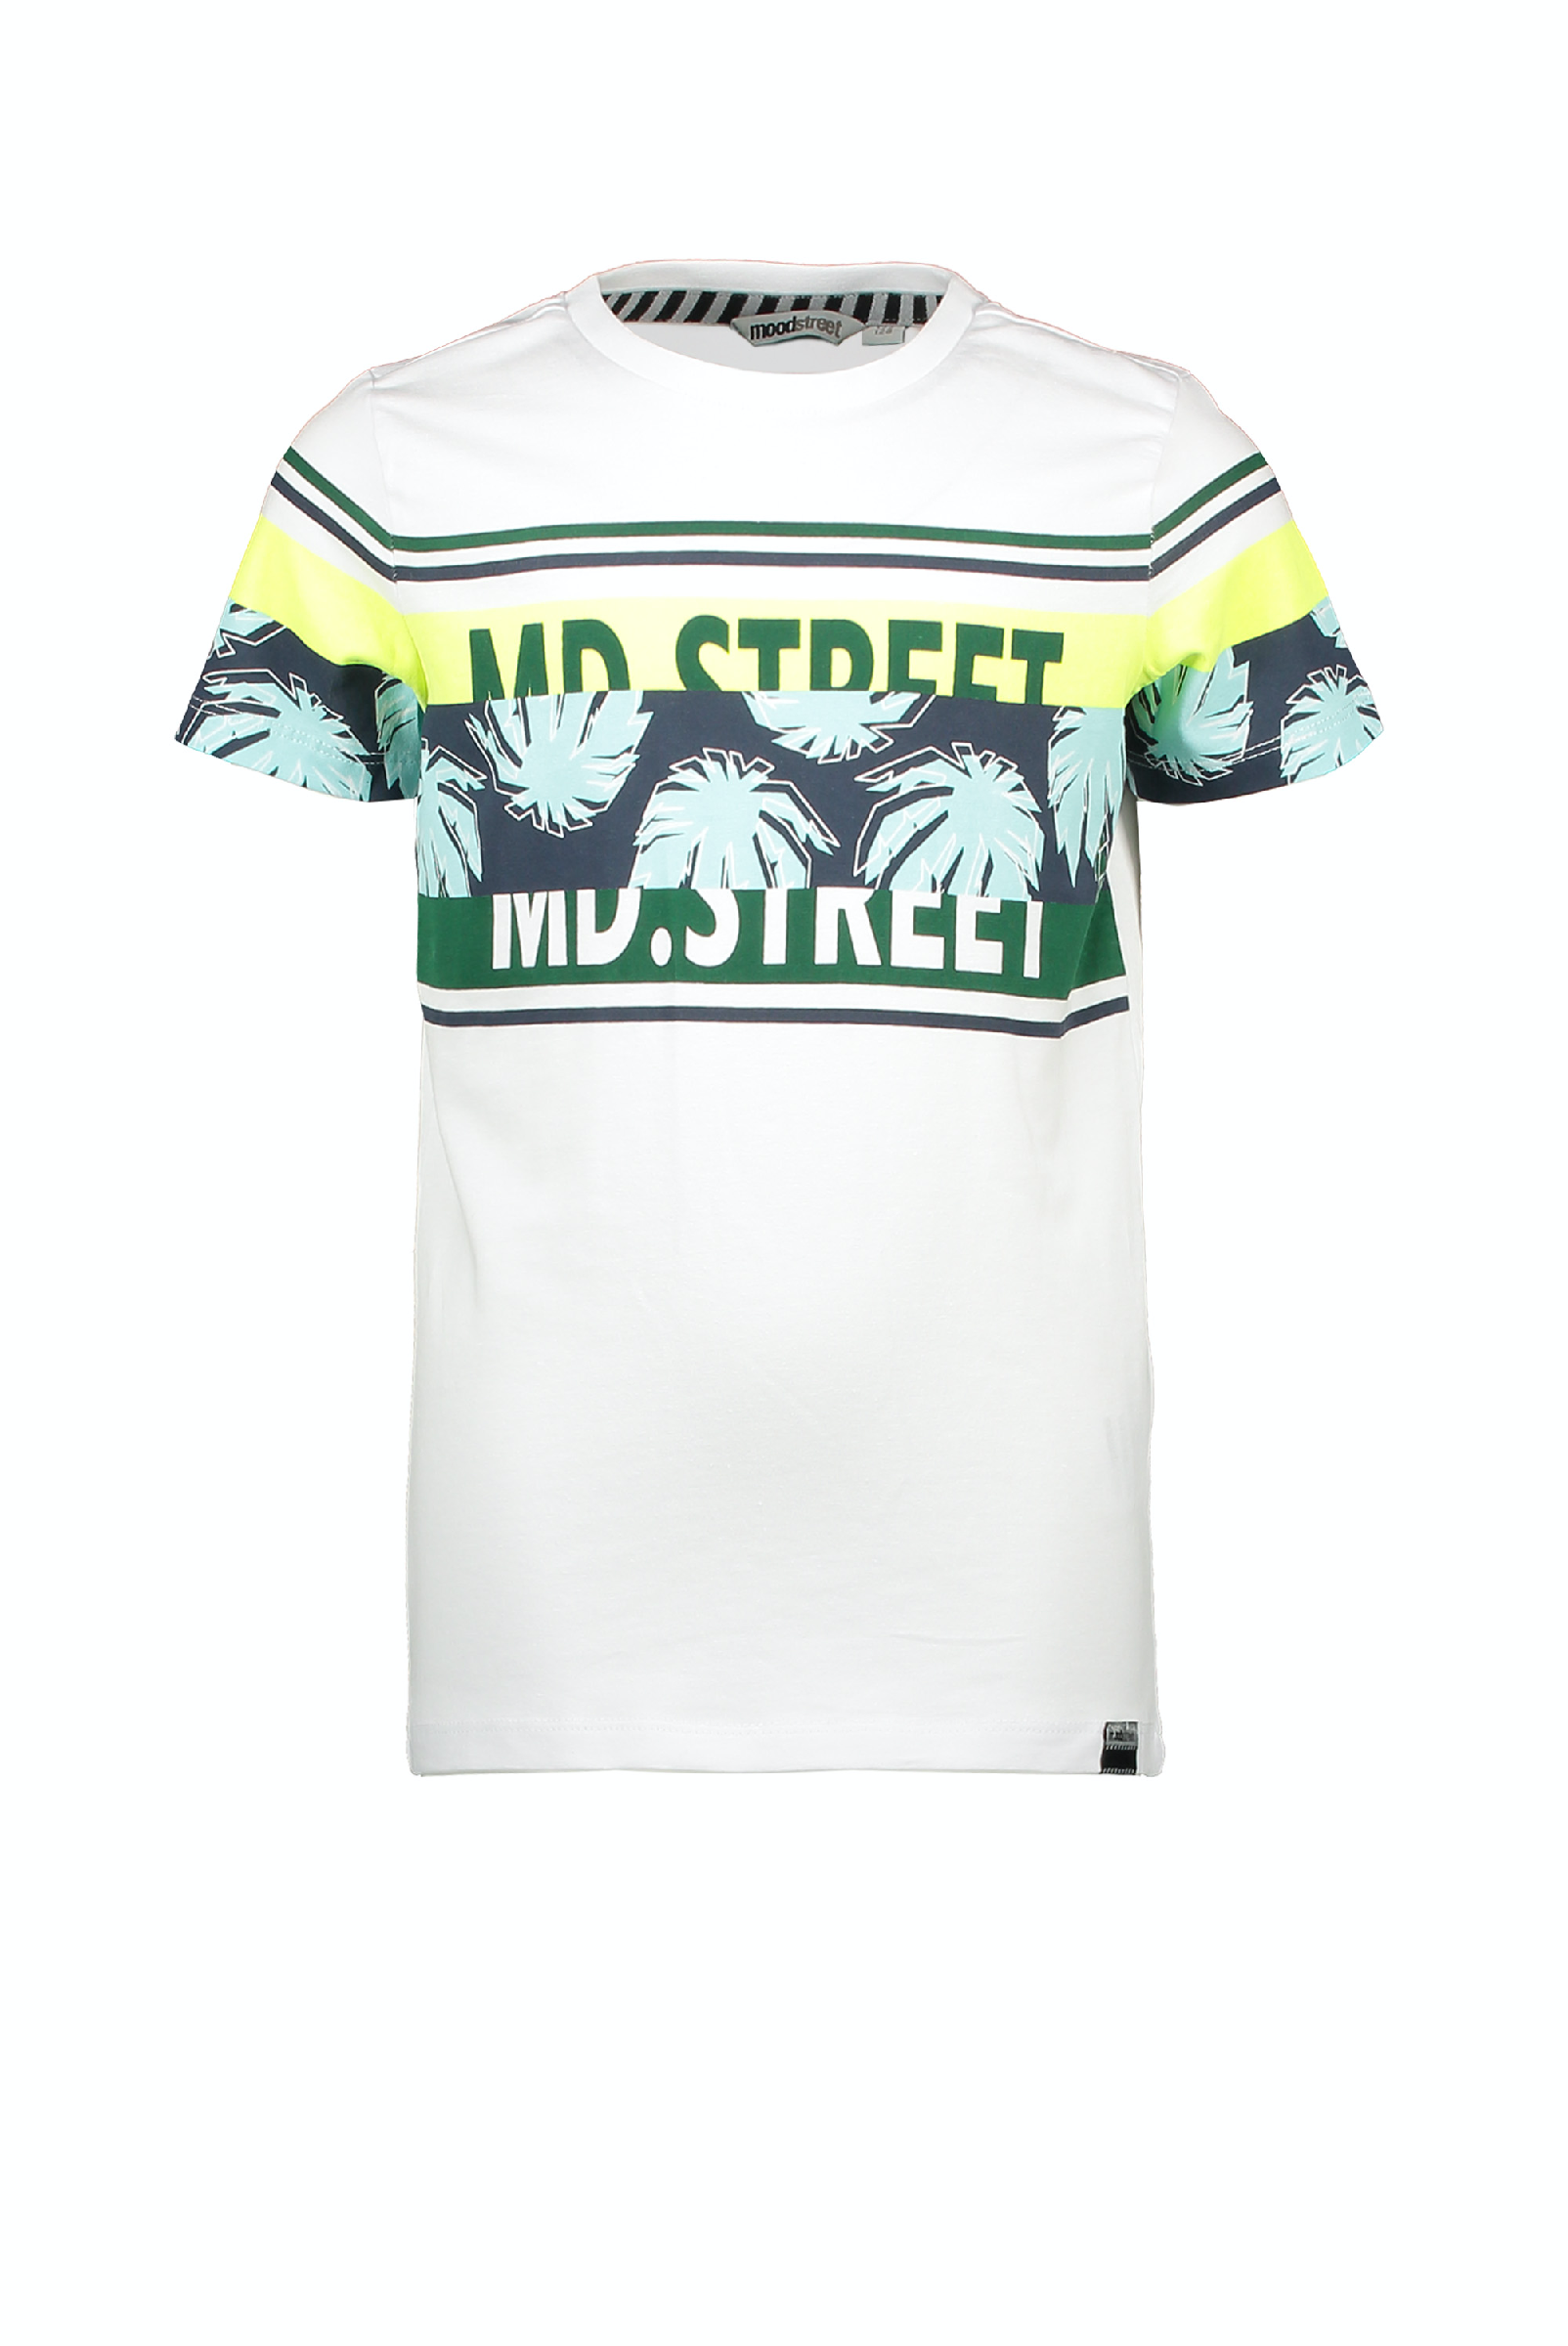 Jongens MT t-shirt chest&sleeve print van Moodstreet in de kleur white in maat 122, 128.